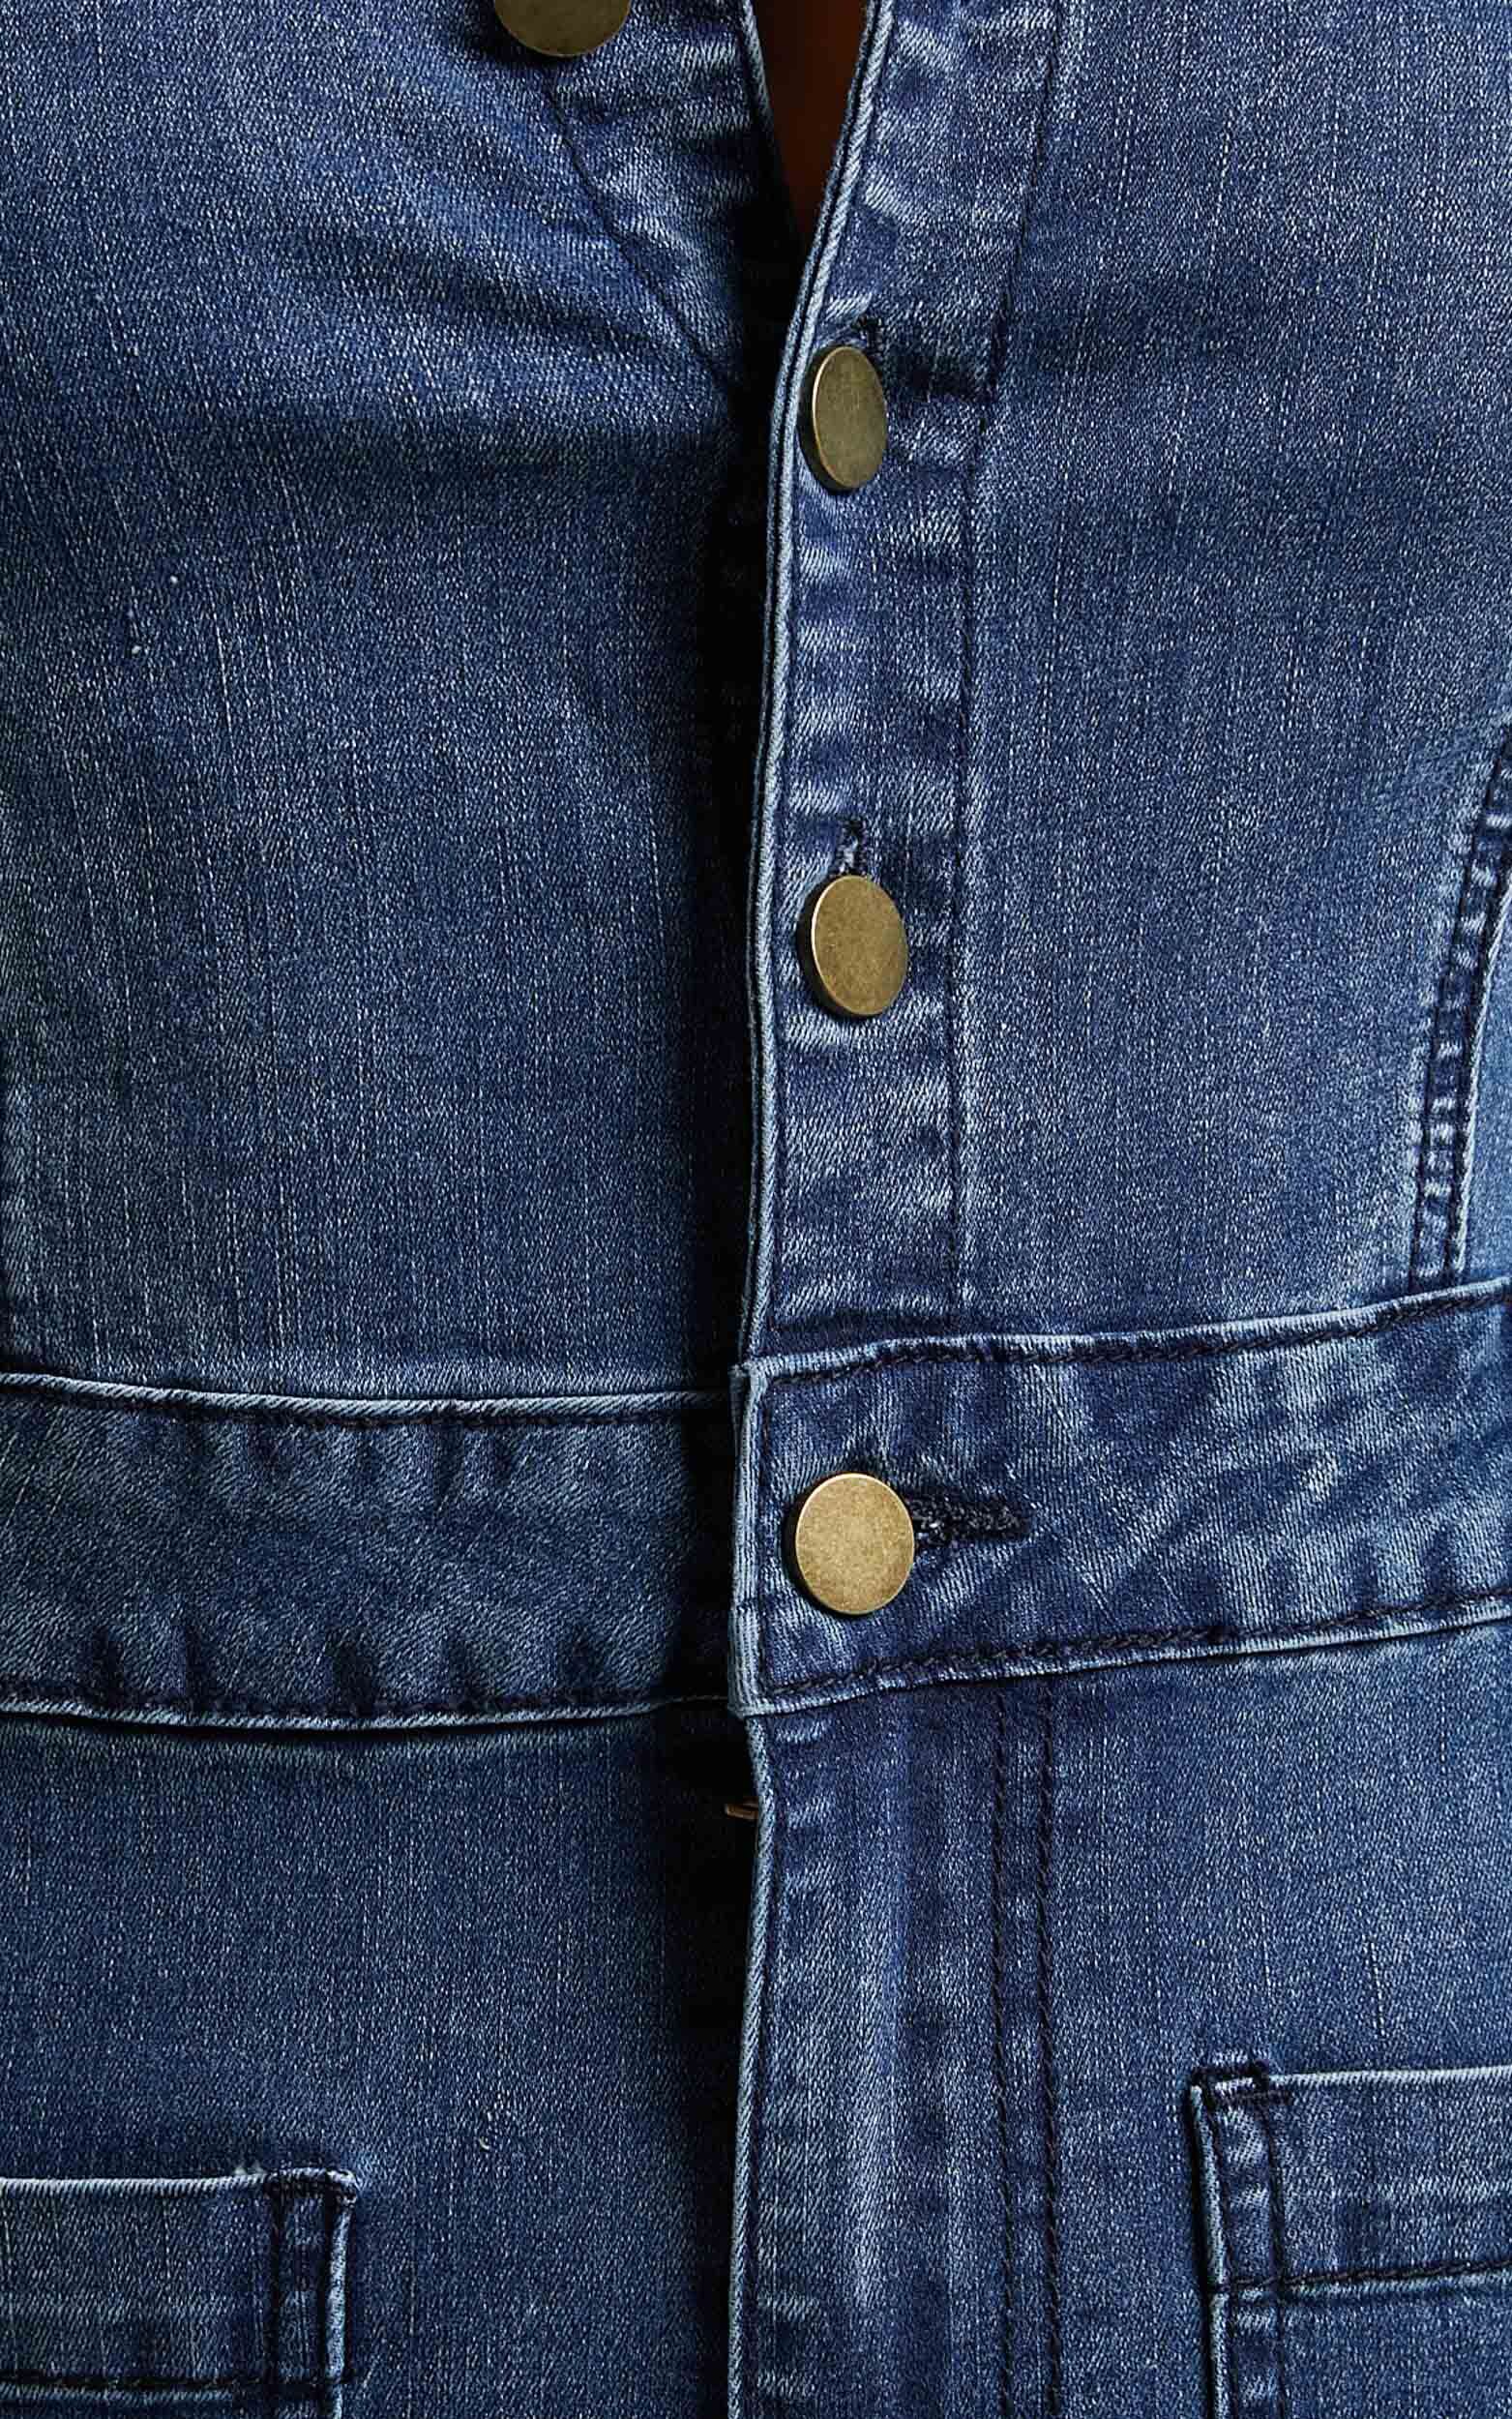 Soft Short Sleeve Denim Jumpsuit, Jeans